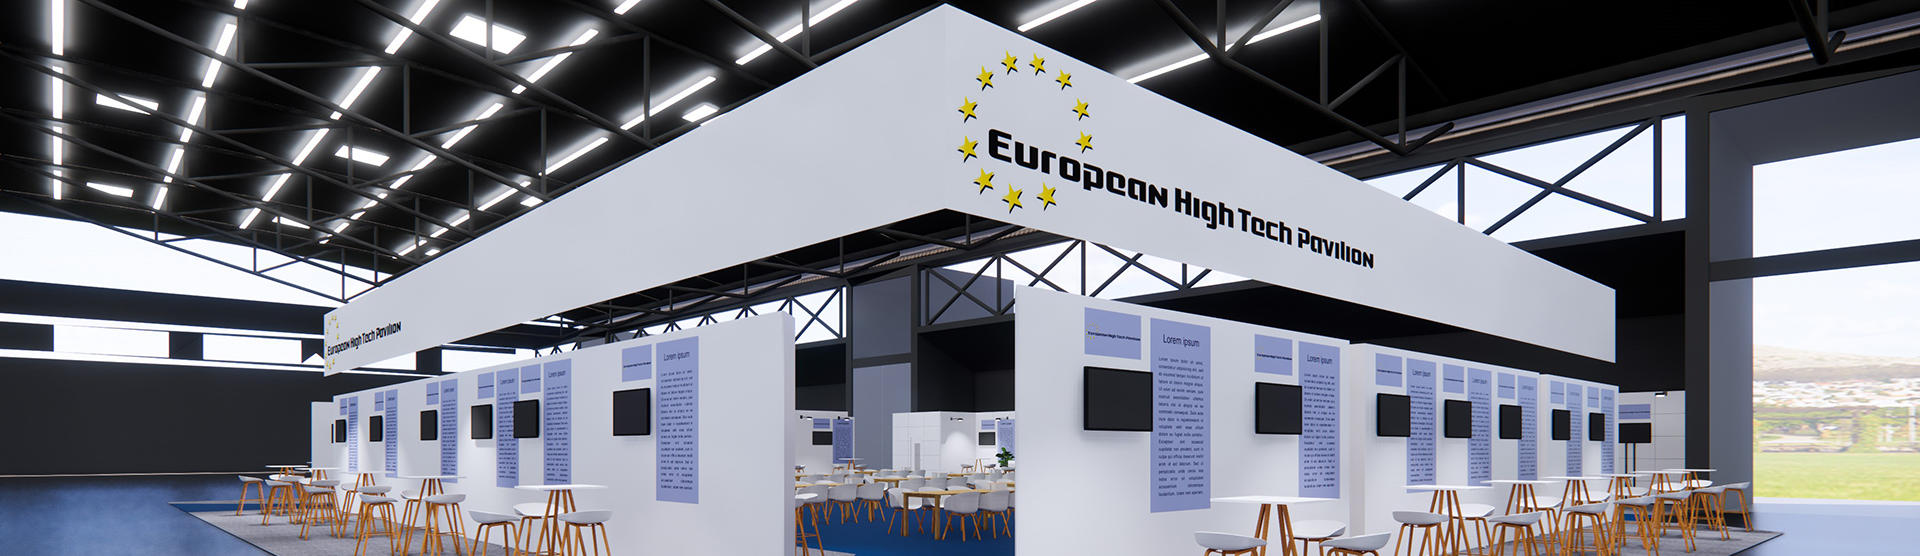 European High-Tech Pavilion